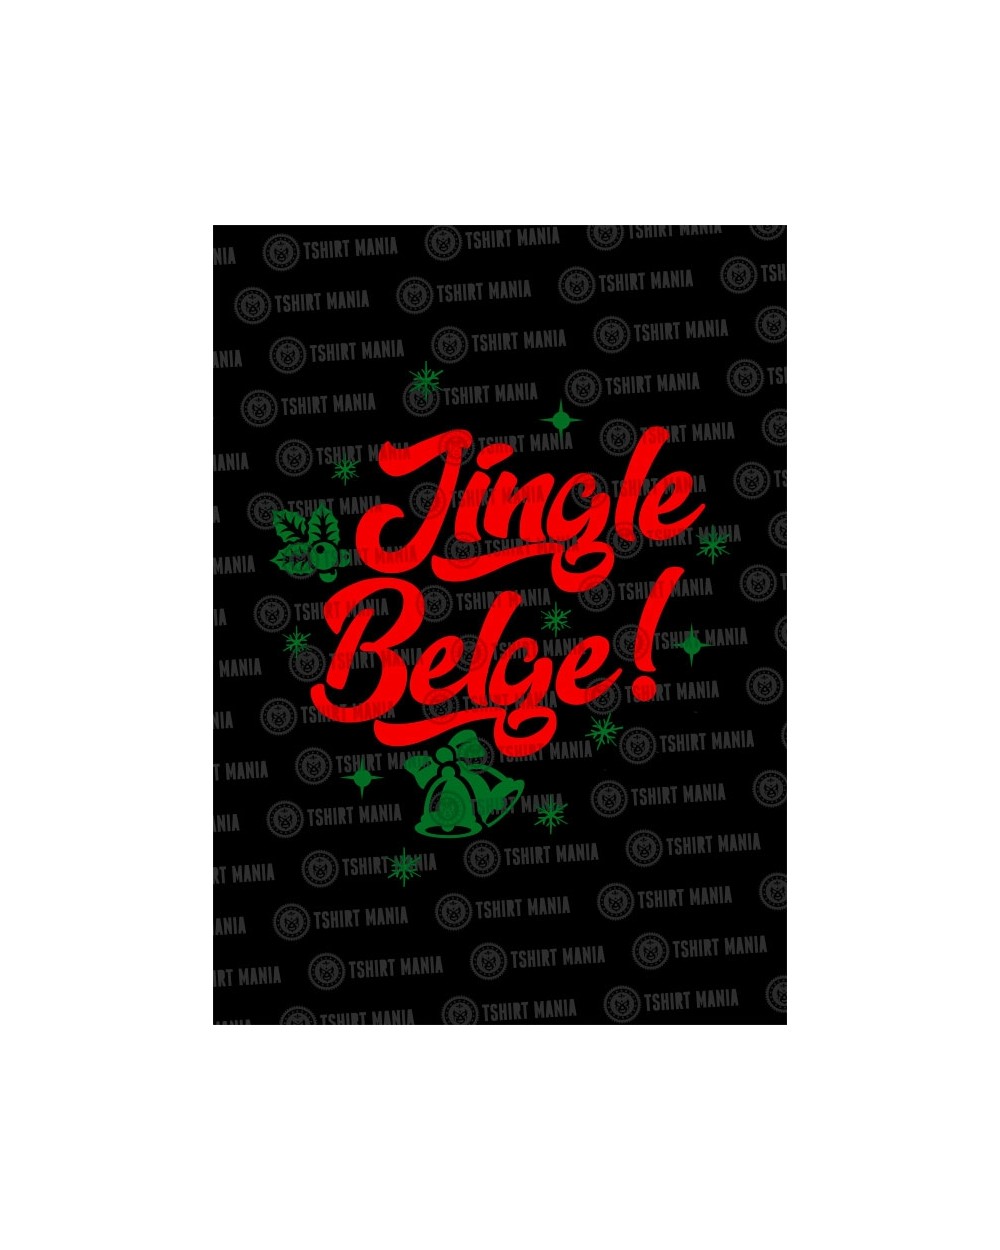 Jingle Belge